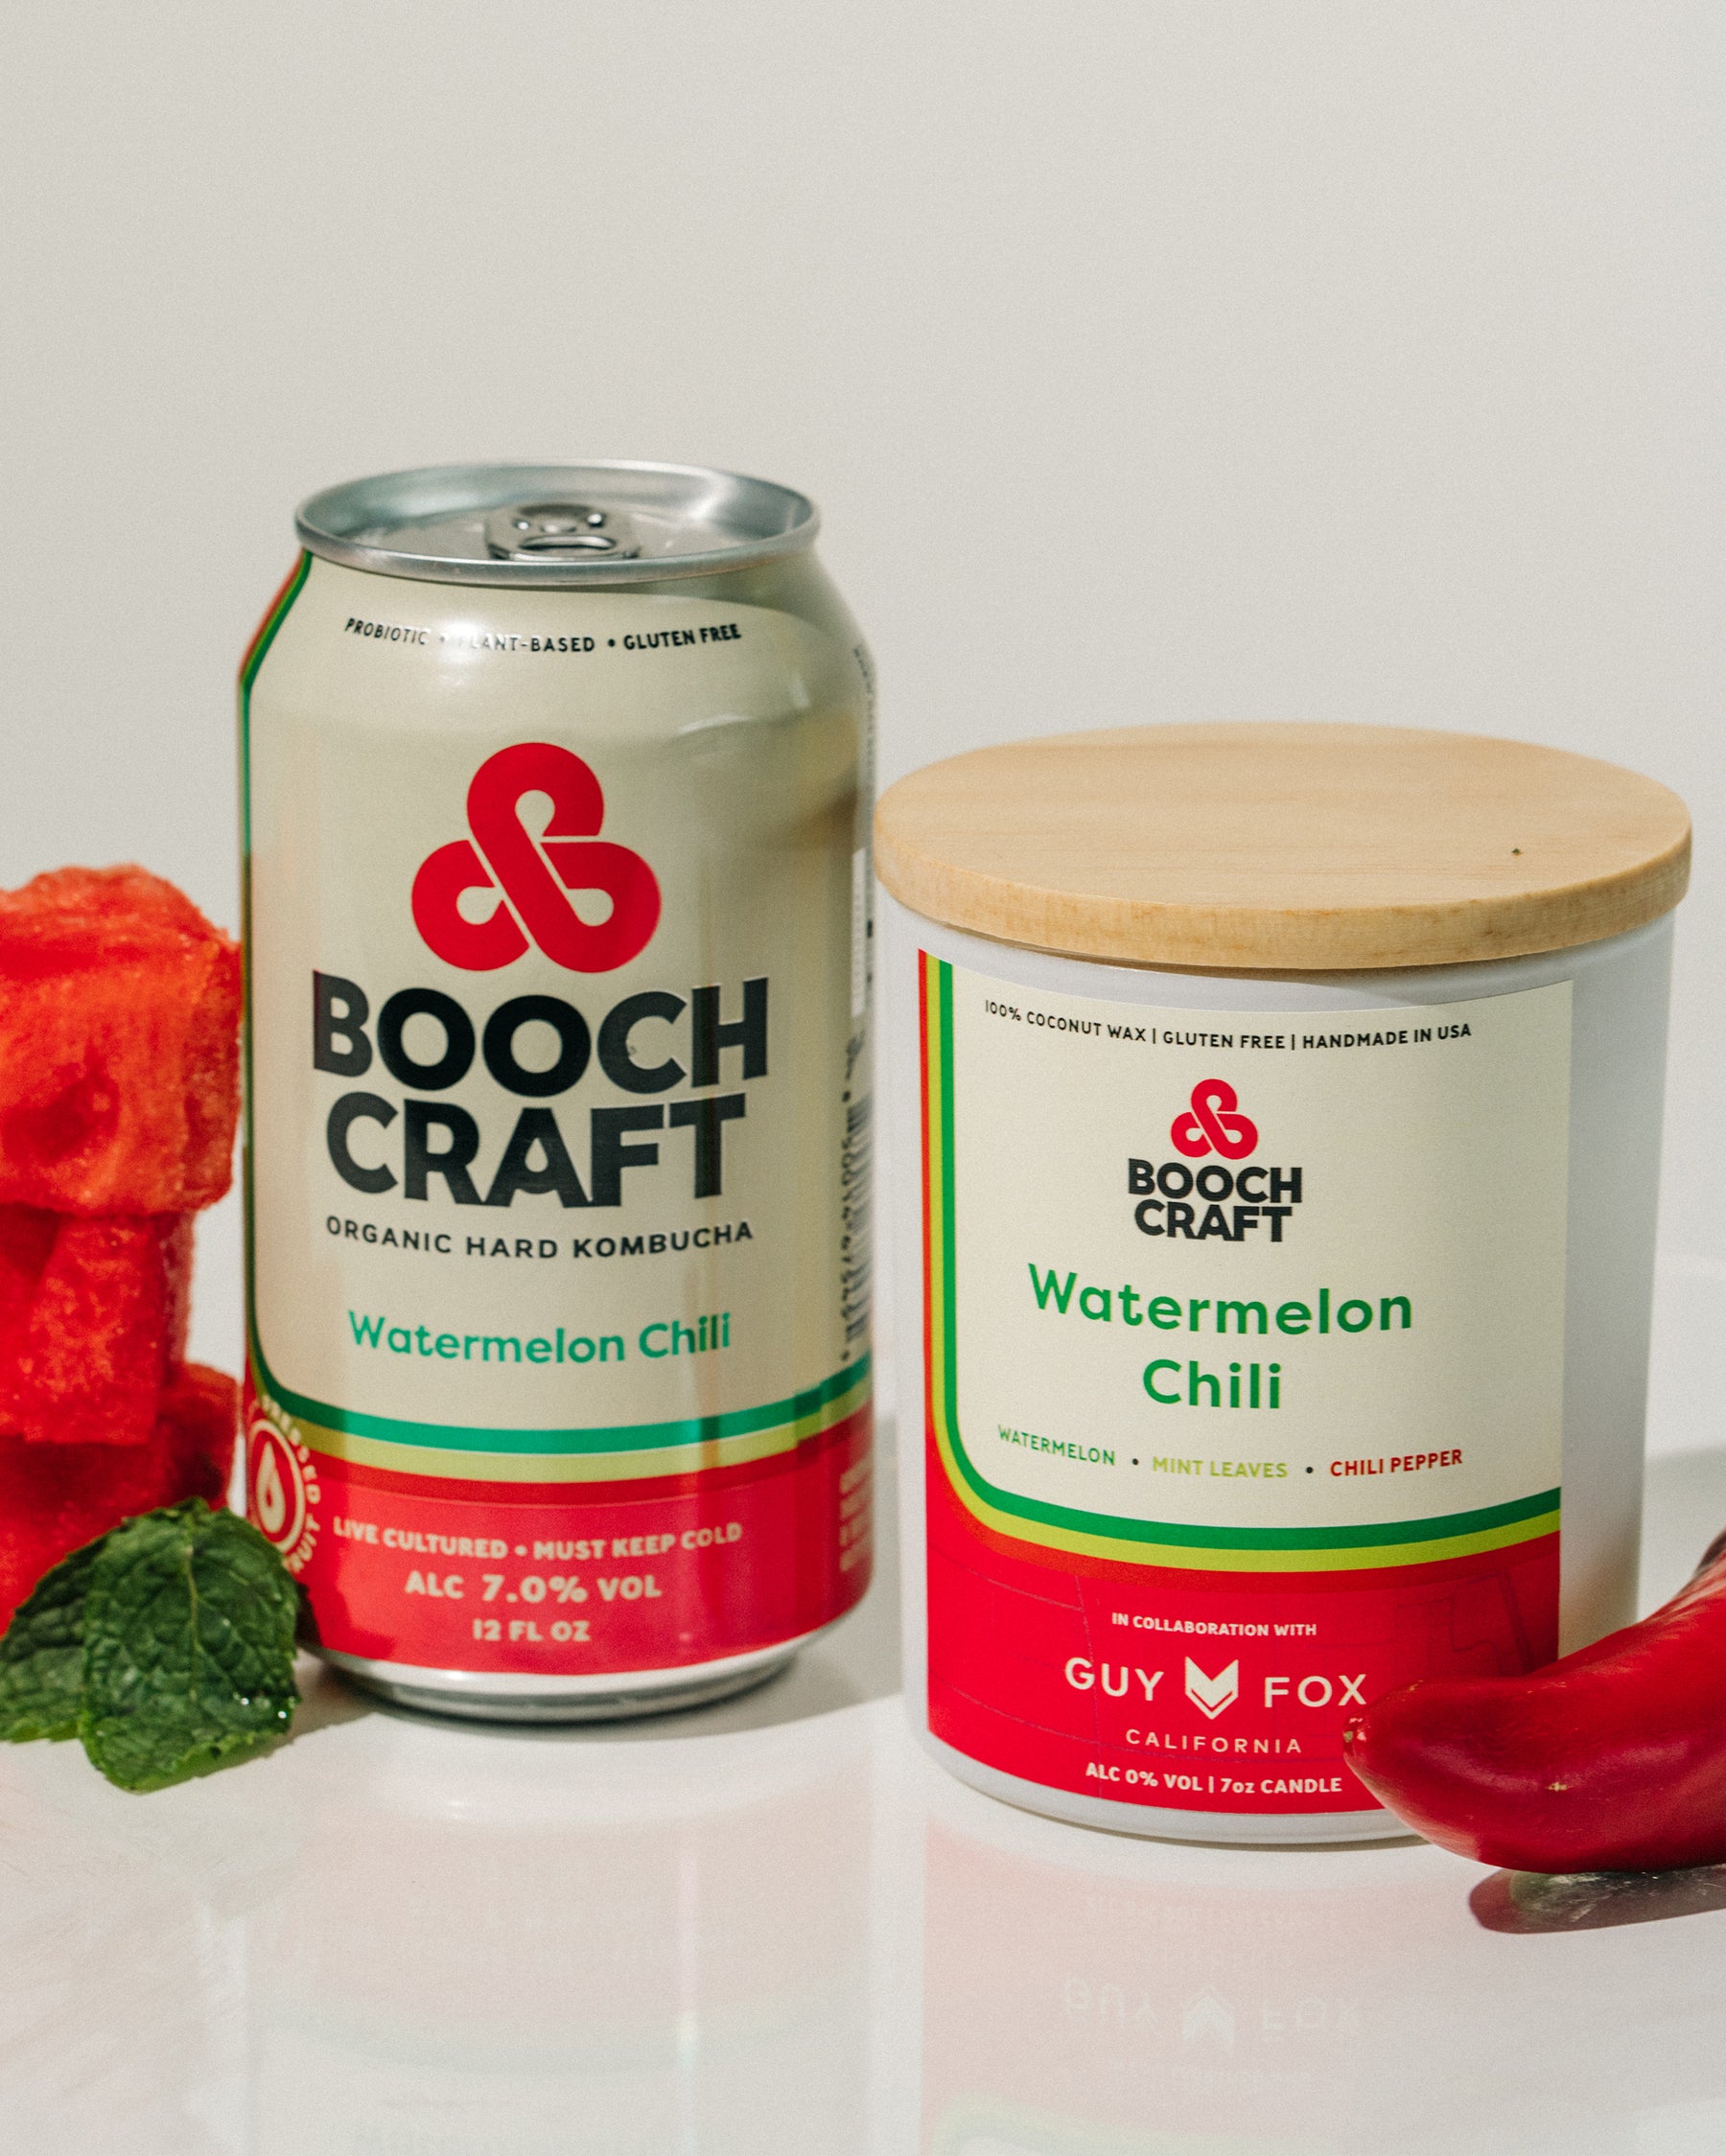 Boochcraft Watermelon Chili